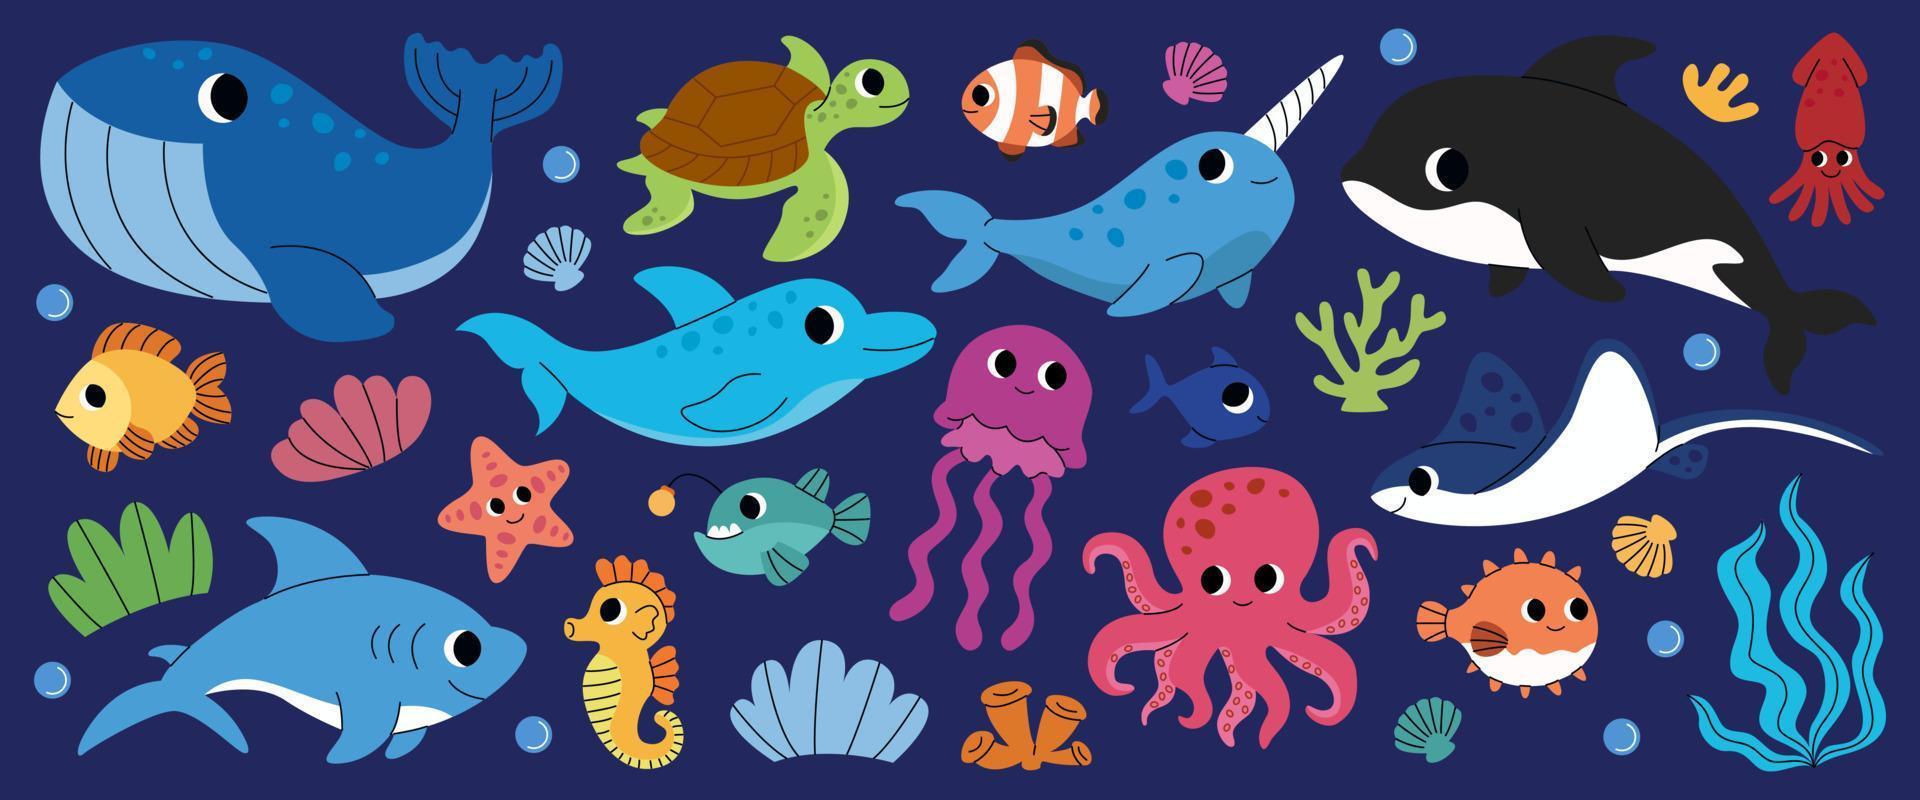 Reihe von Meerestieren. kindliche Wasserschildkröte, Wal, Narwal, Delfin, Krake, Hai, Qualle, Seepferdchen, Fische, Koralle, Killerwal. bewohner des meeres, ozean unterwasserwelt. vektor